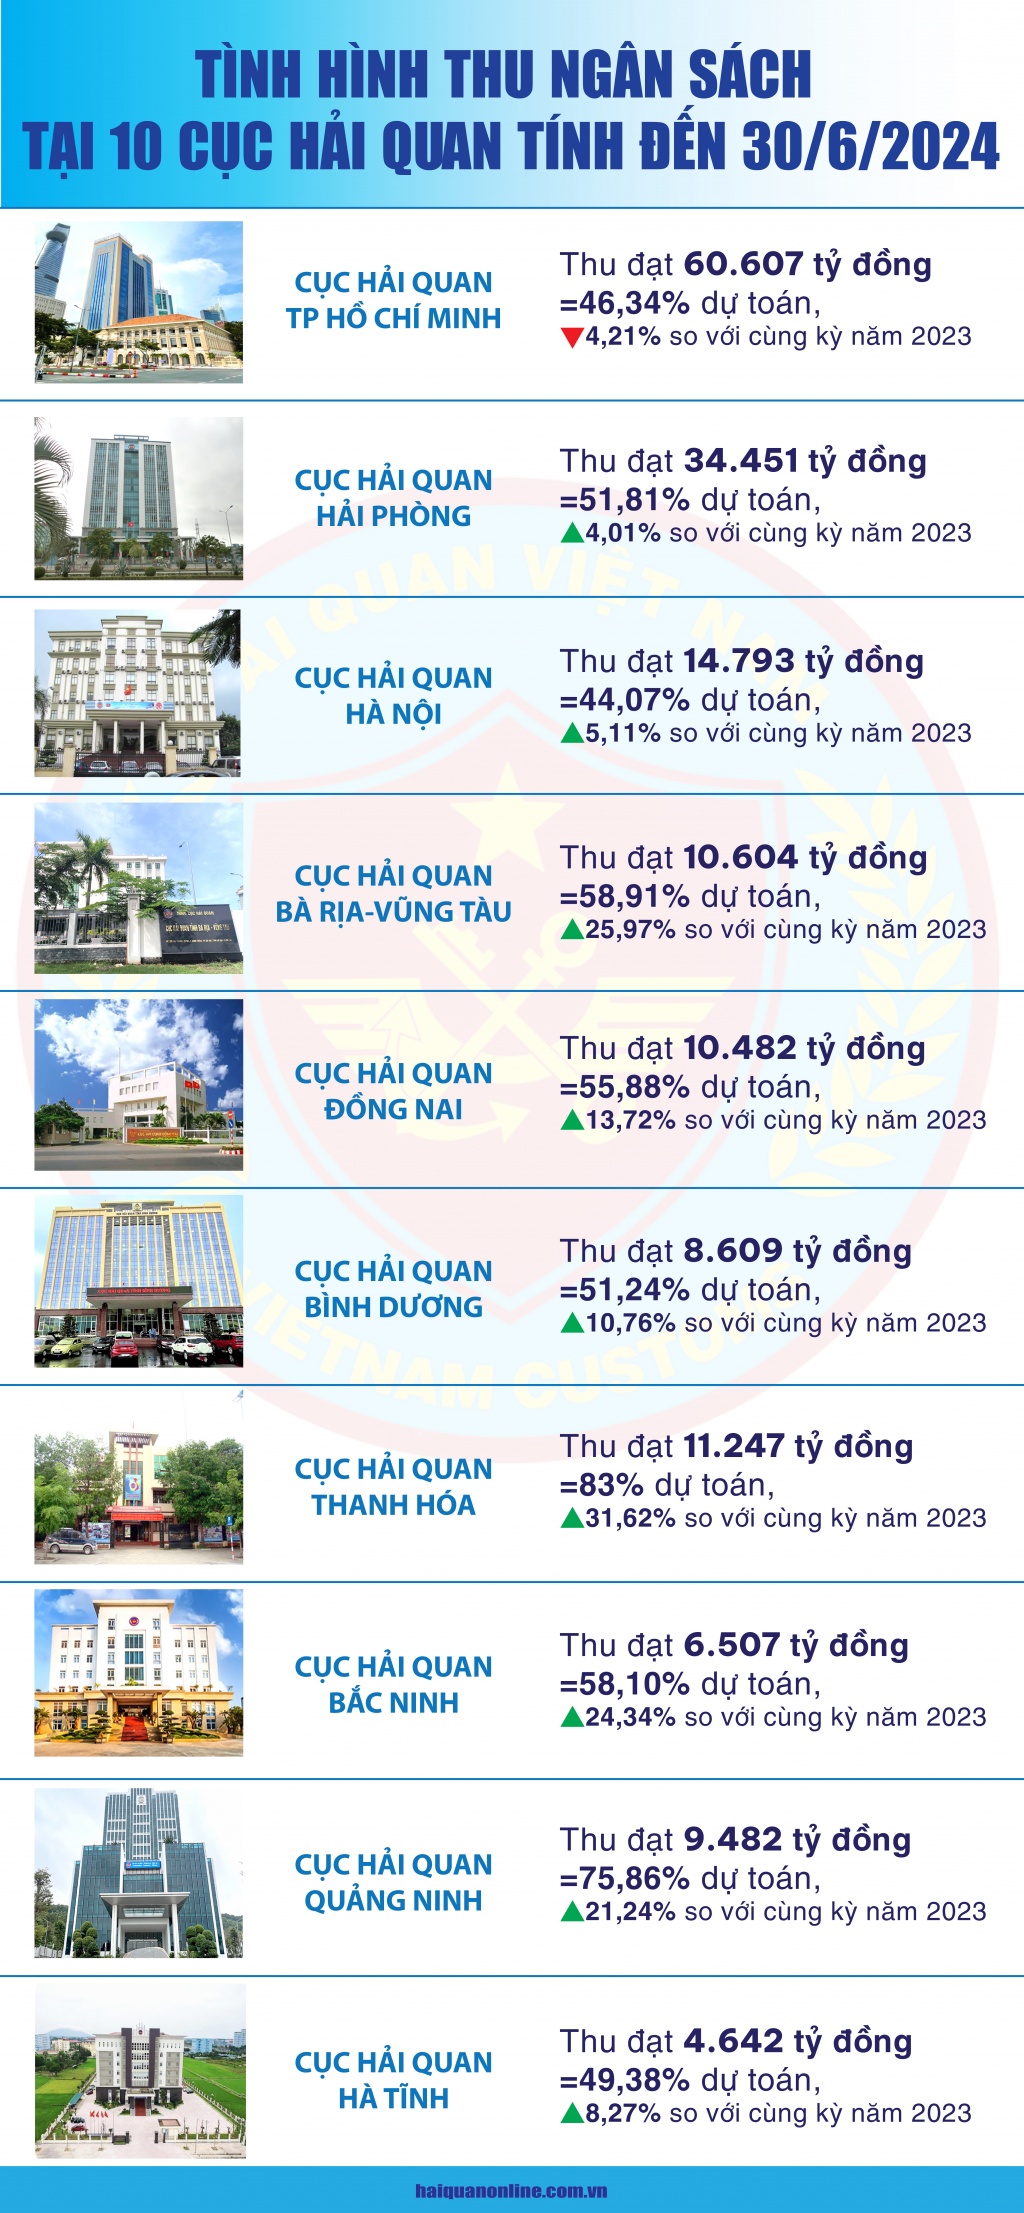 (Infographic) Thu ngân sách tại 10 cục hải quan tỉnh, thành phố tăng 5,97%